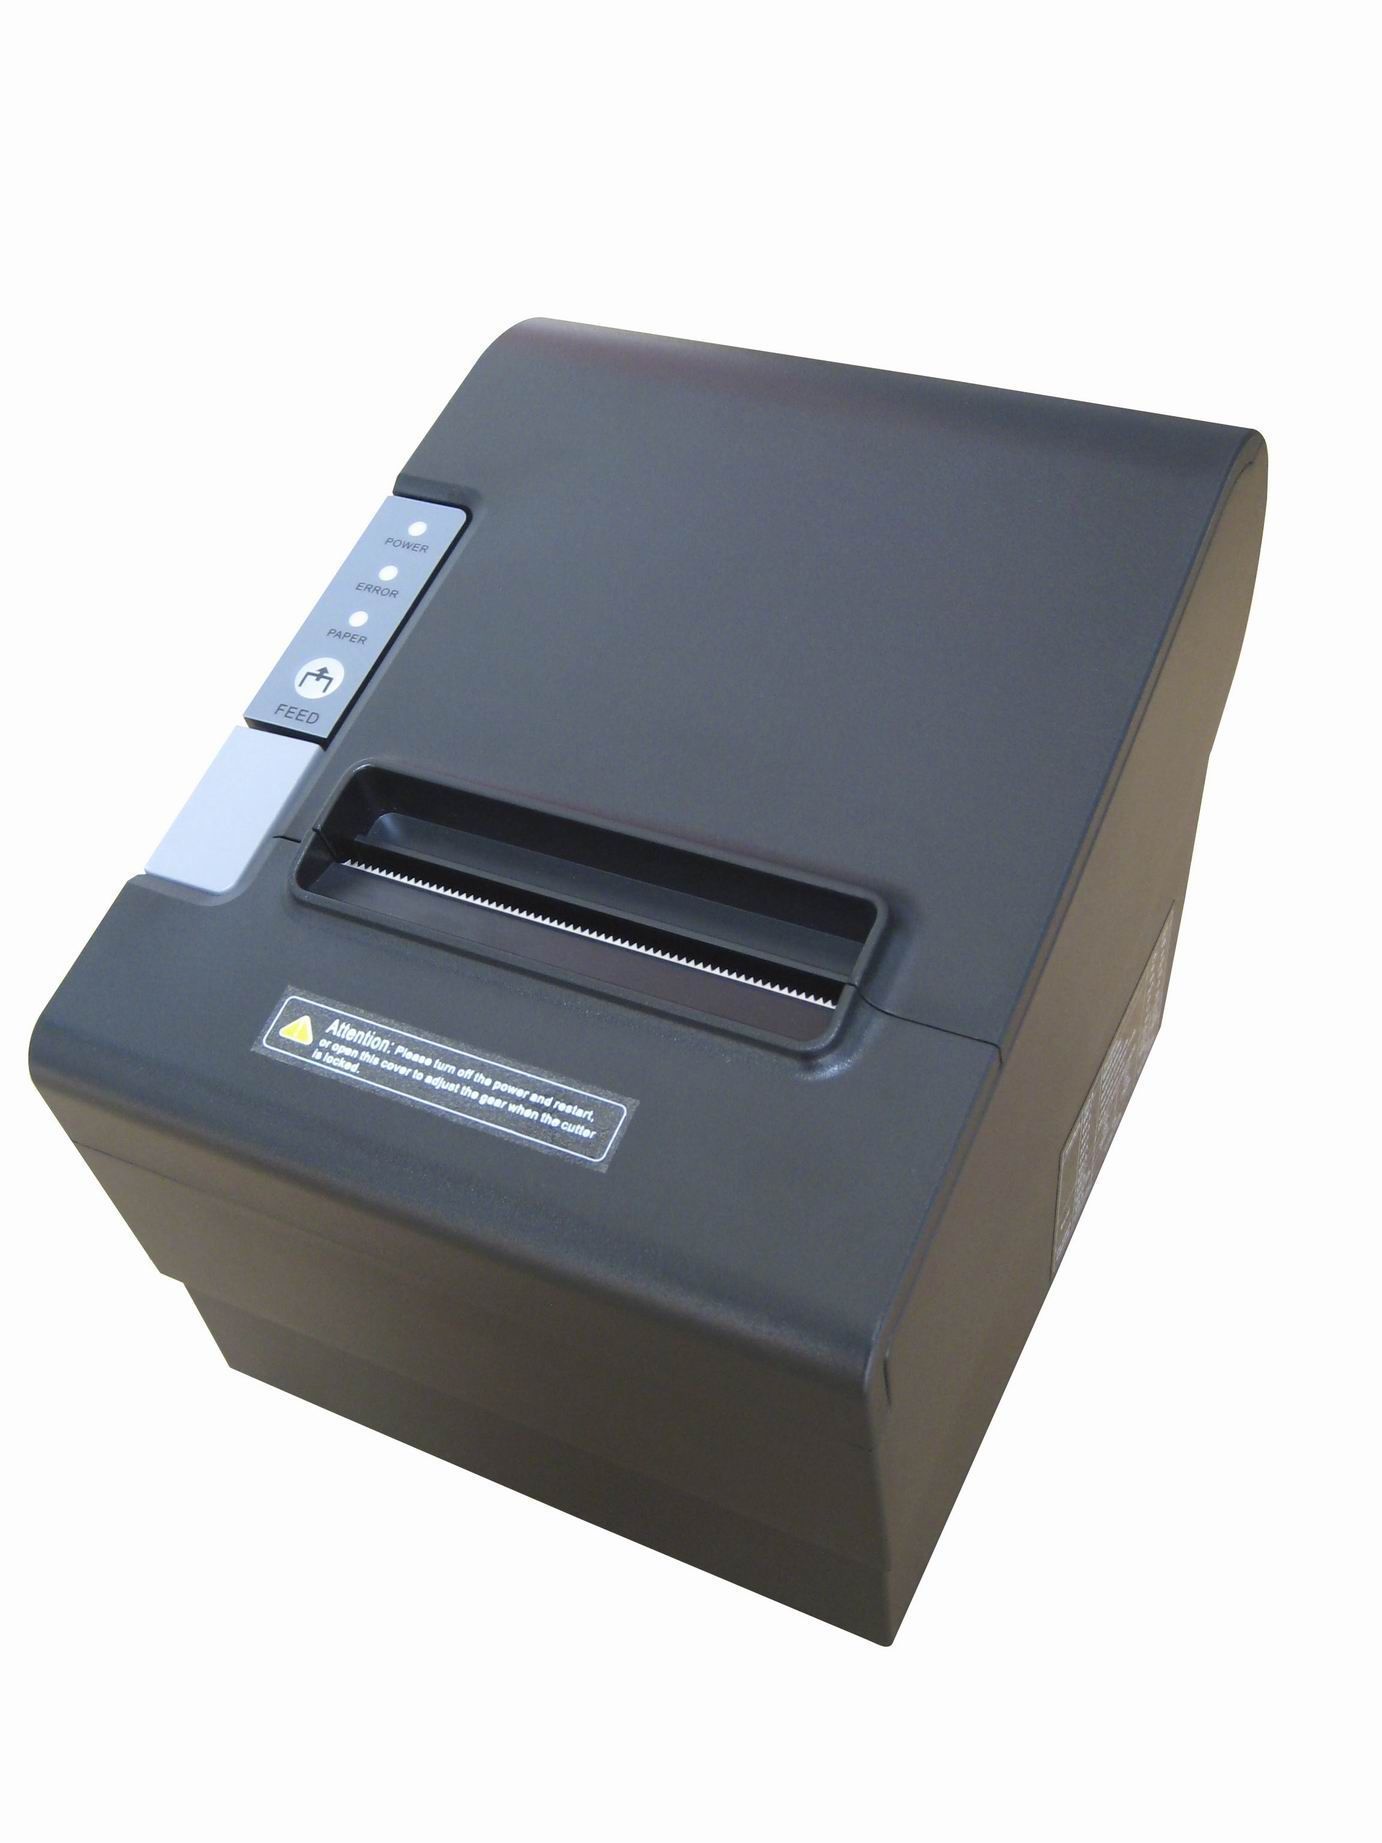 Ккт фр. Чековый принтер GLOBALPOS rp80. Фискальный регистратор Элвес-фр-ф. Принтер чеков GLOBALPOS rp80 USB+rs232+Ethernet. Термопринтер GLOBALPOS rp328.